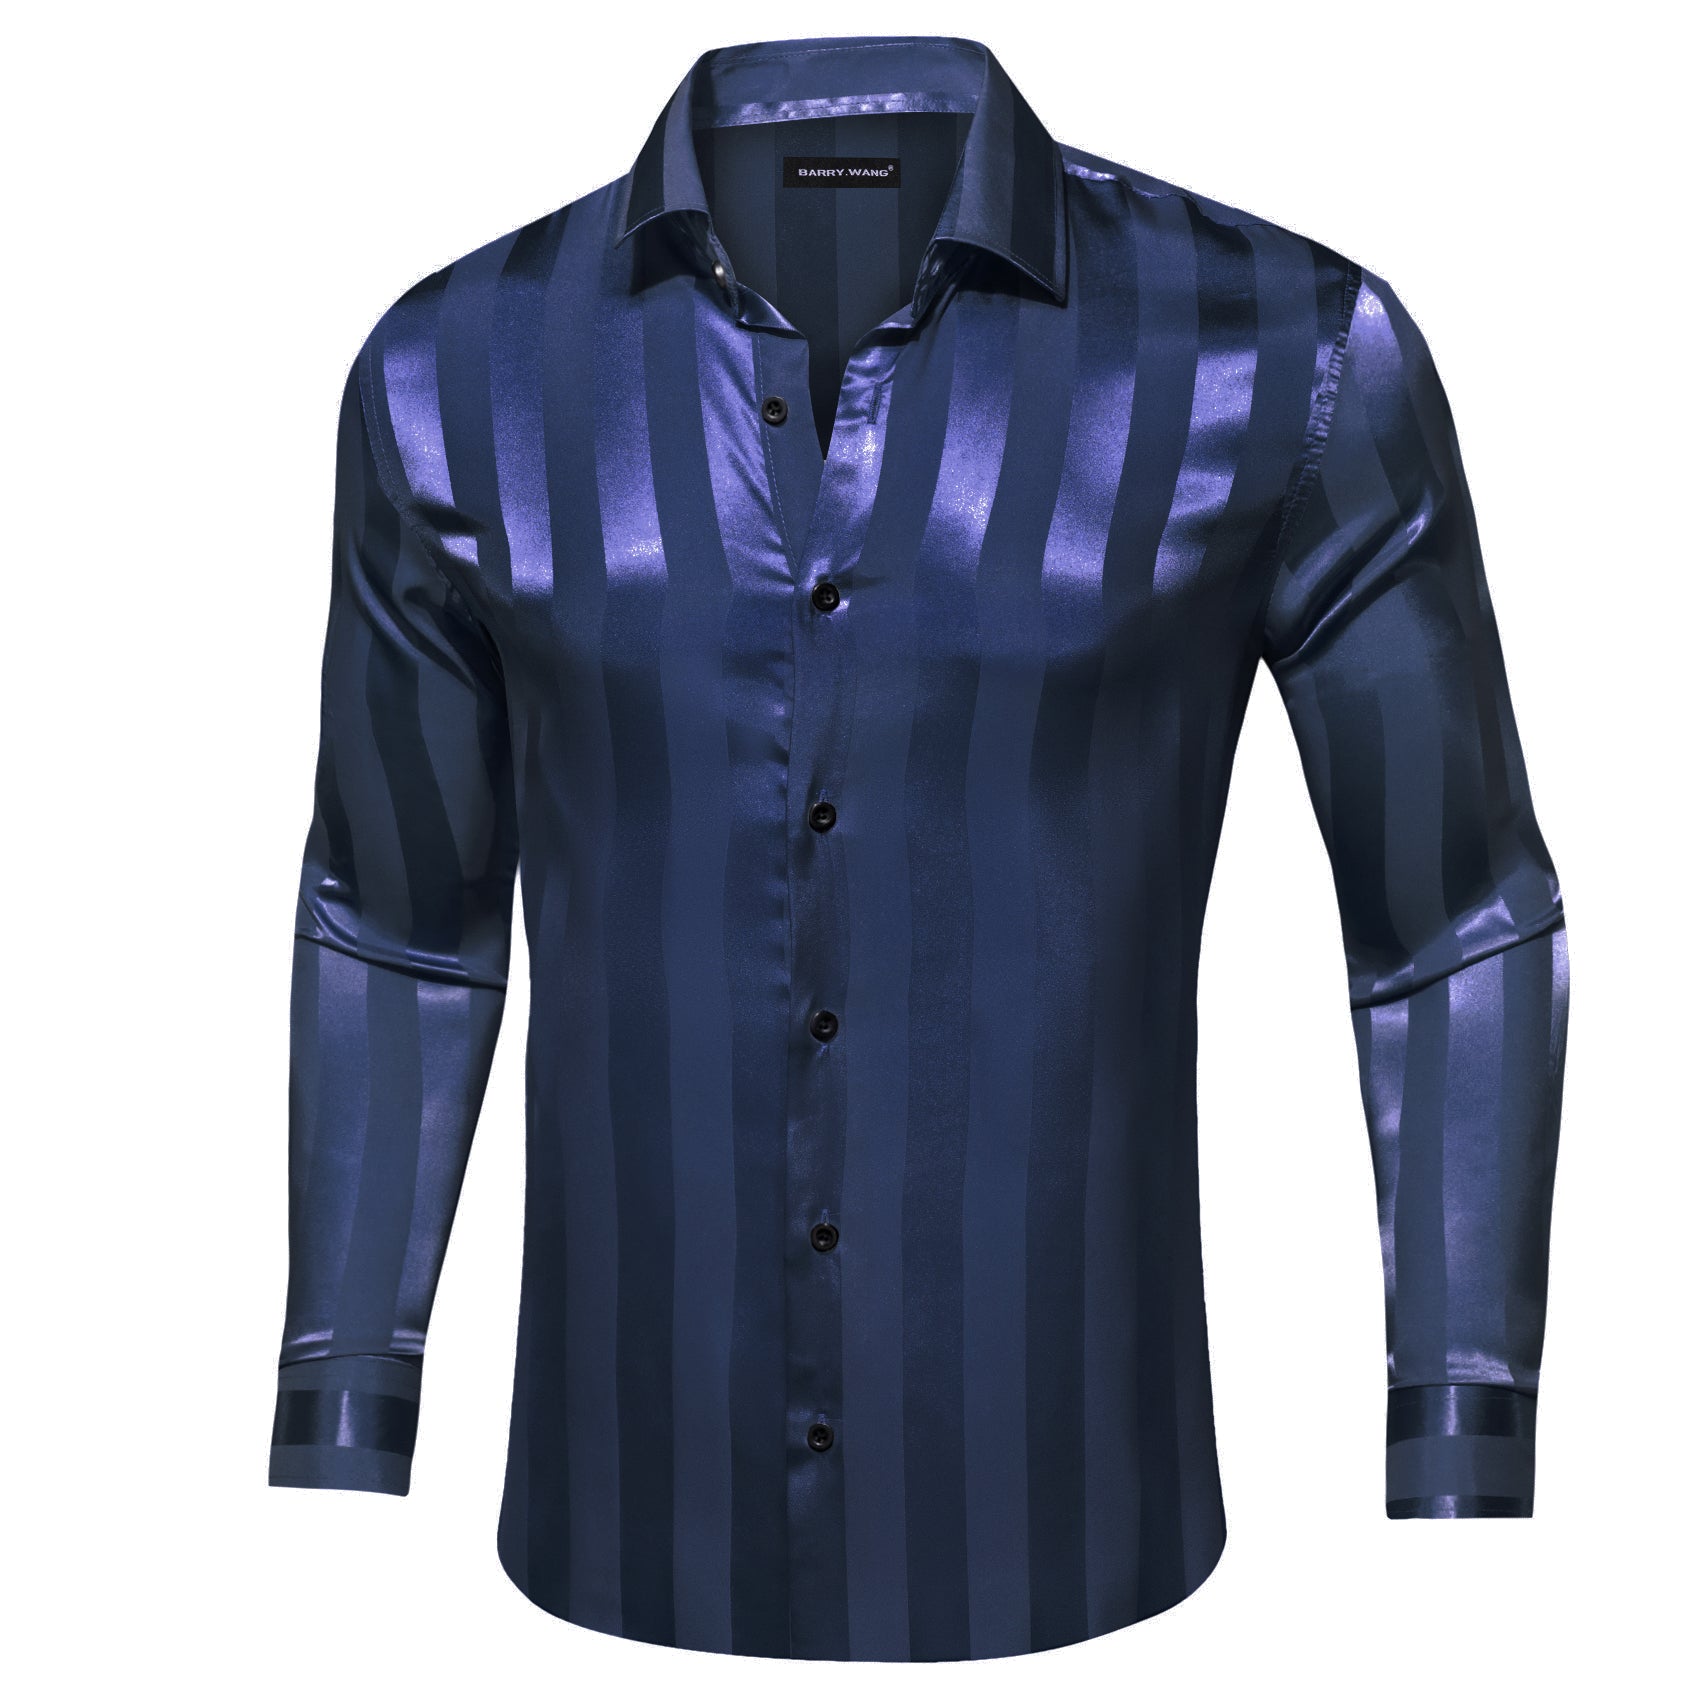 Barry.wang Peacock Blue Striped Silk Men's Shirt